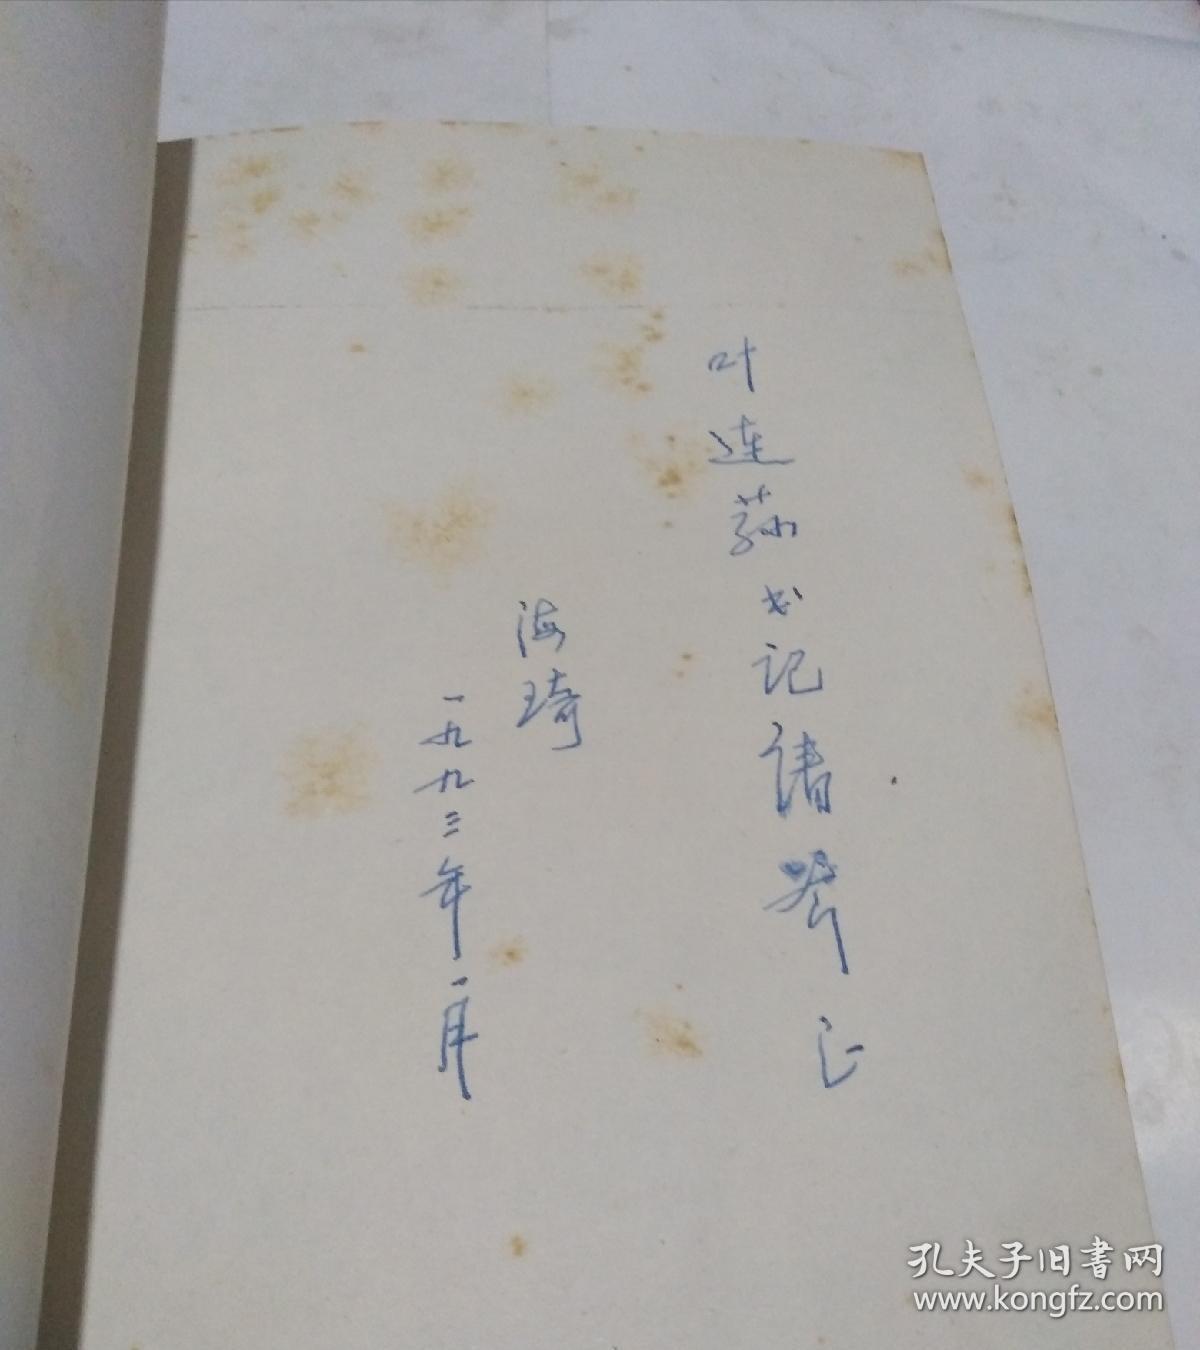 善的冲突:中国历史上的义利之辨  作者签赠本